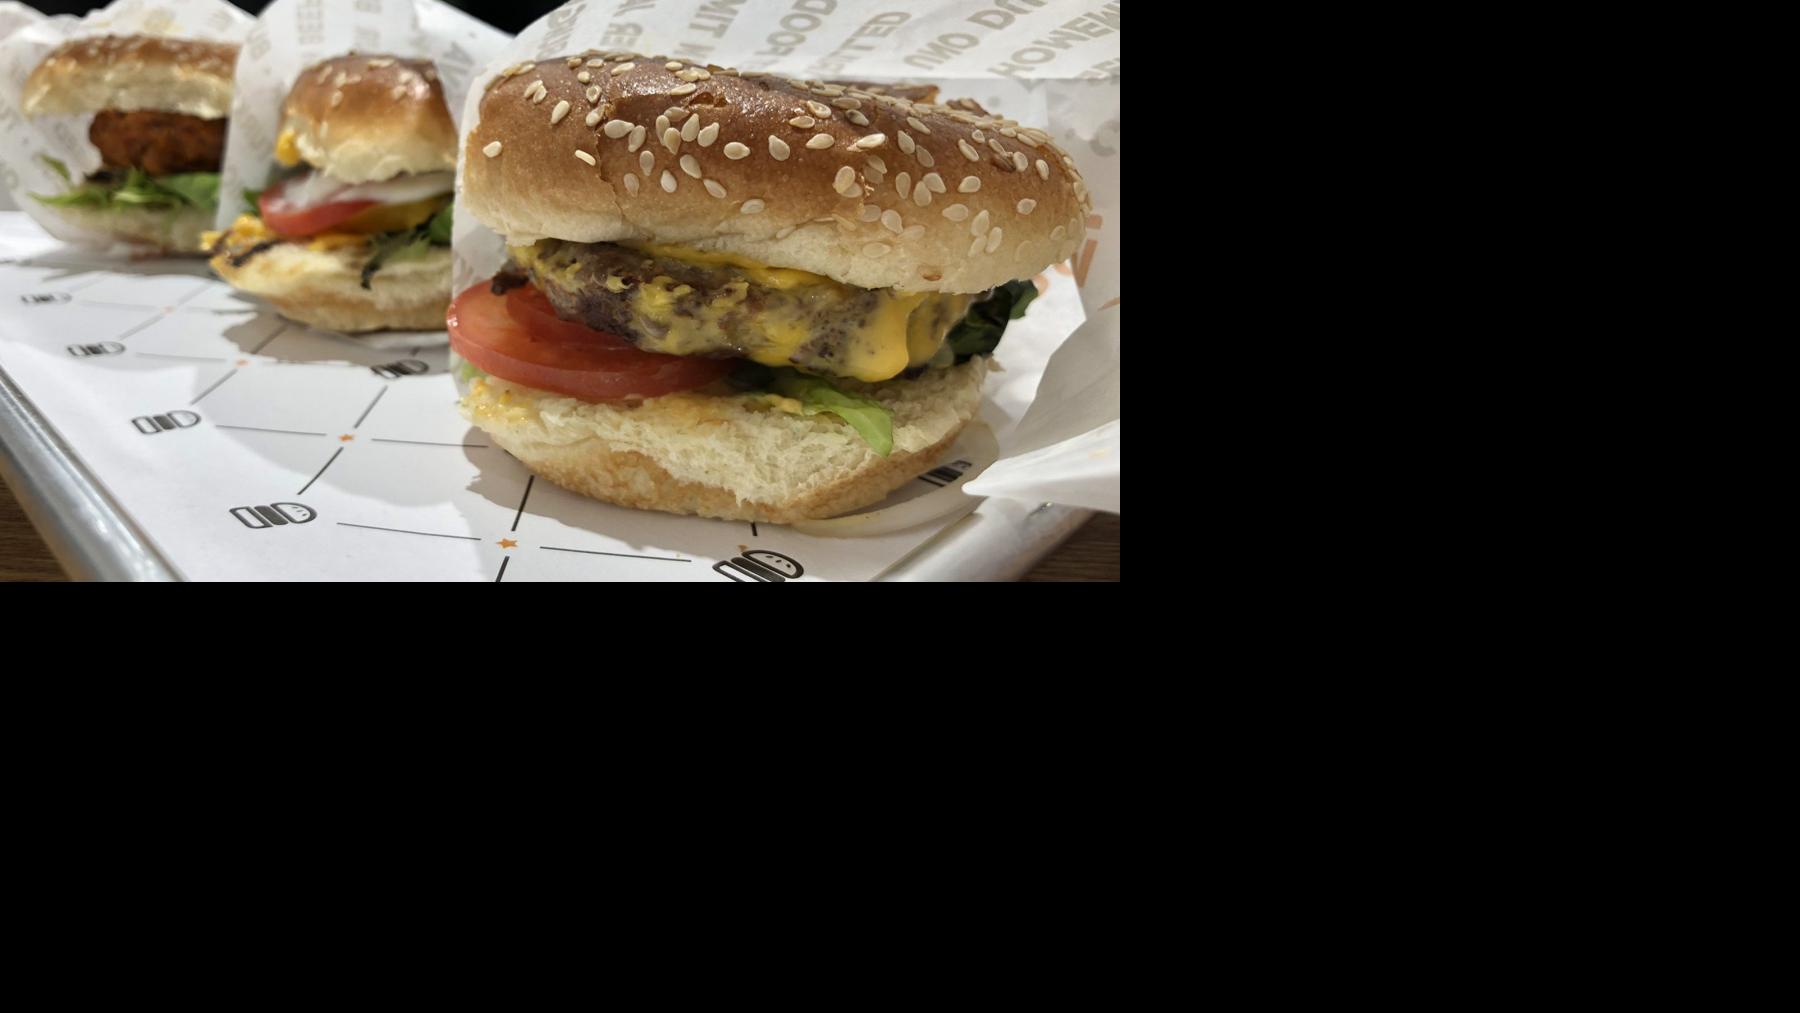 Falafel Burger Sweet Potato Fries Shine At New Burgerim On Hertel - blox burger